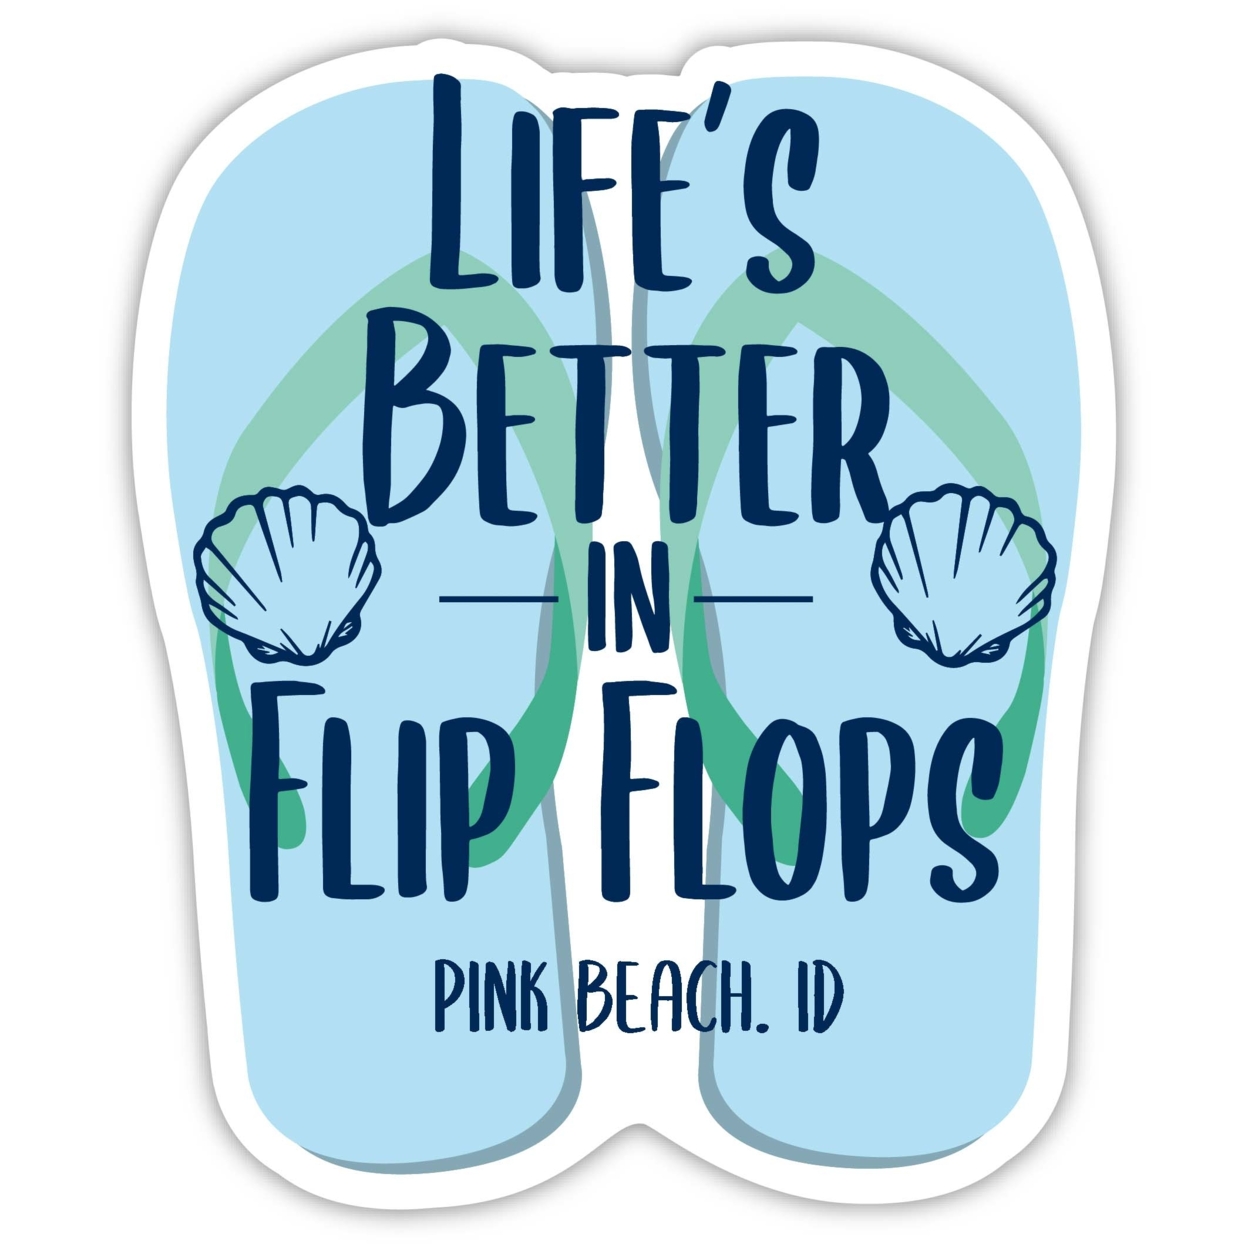 Pink Beach Indonesia Souvenir 4 Inch Vinyl Decal Sticker Flip Flop Design